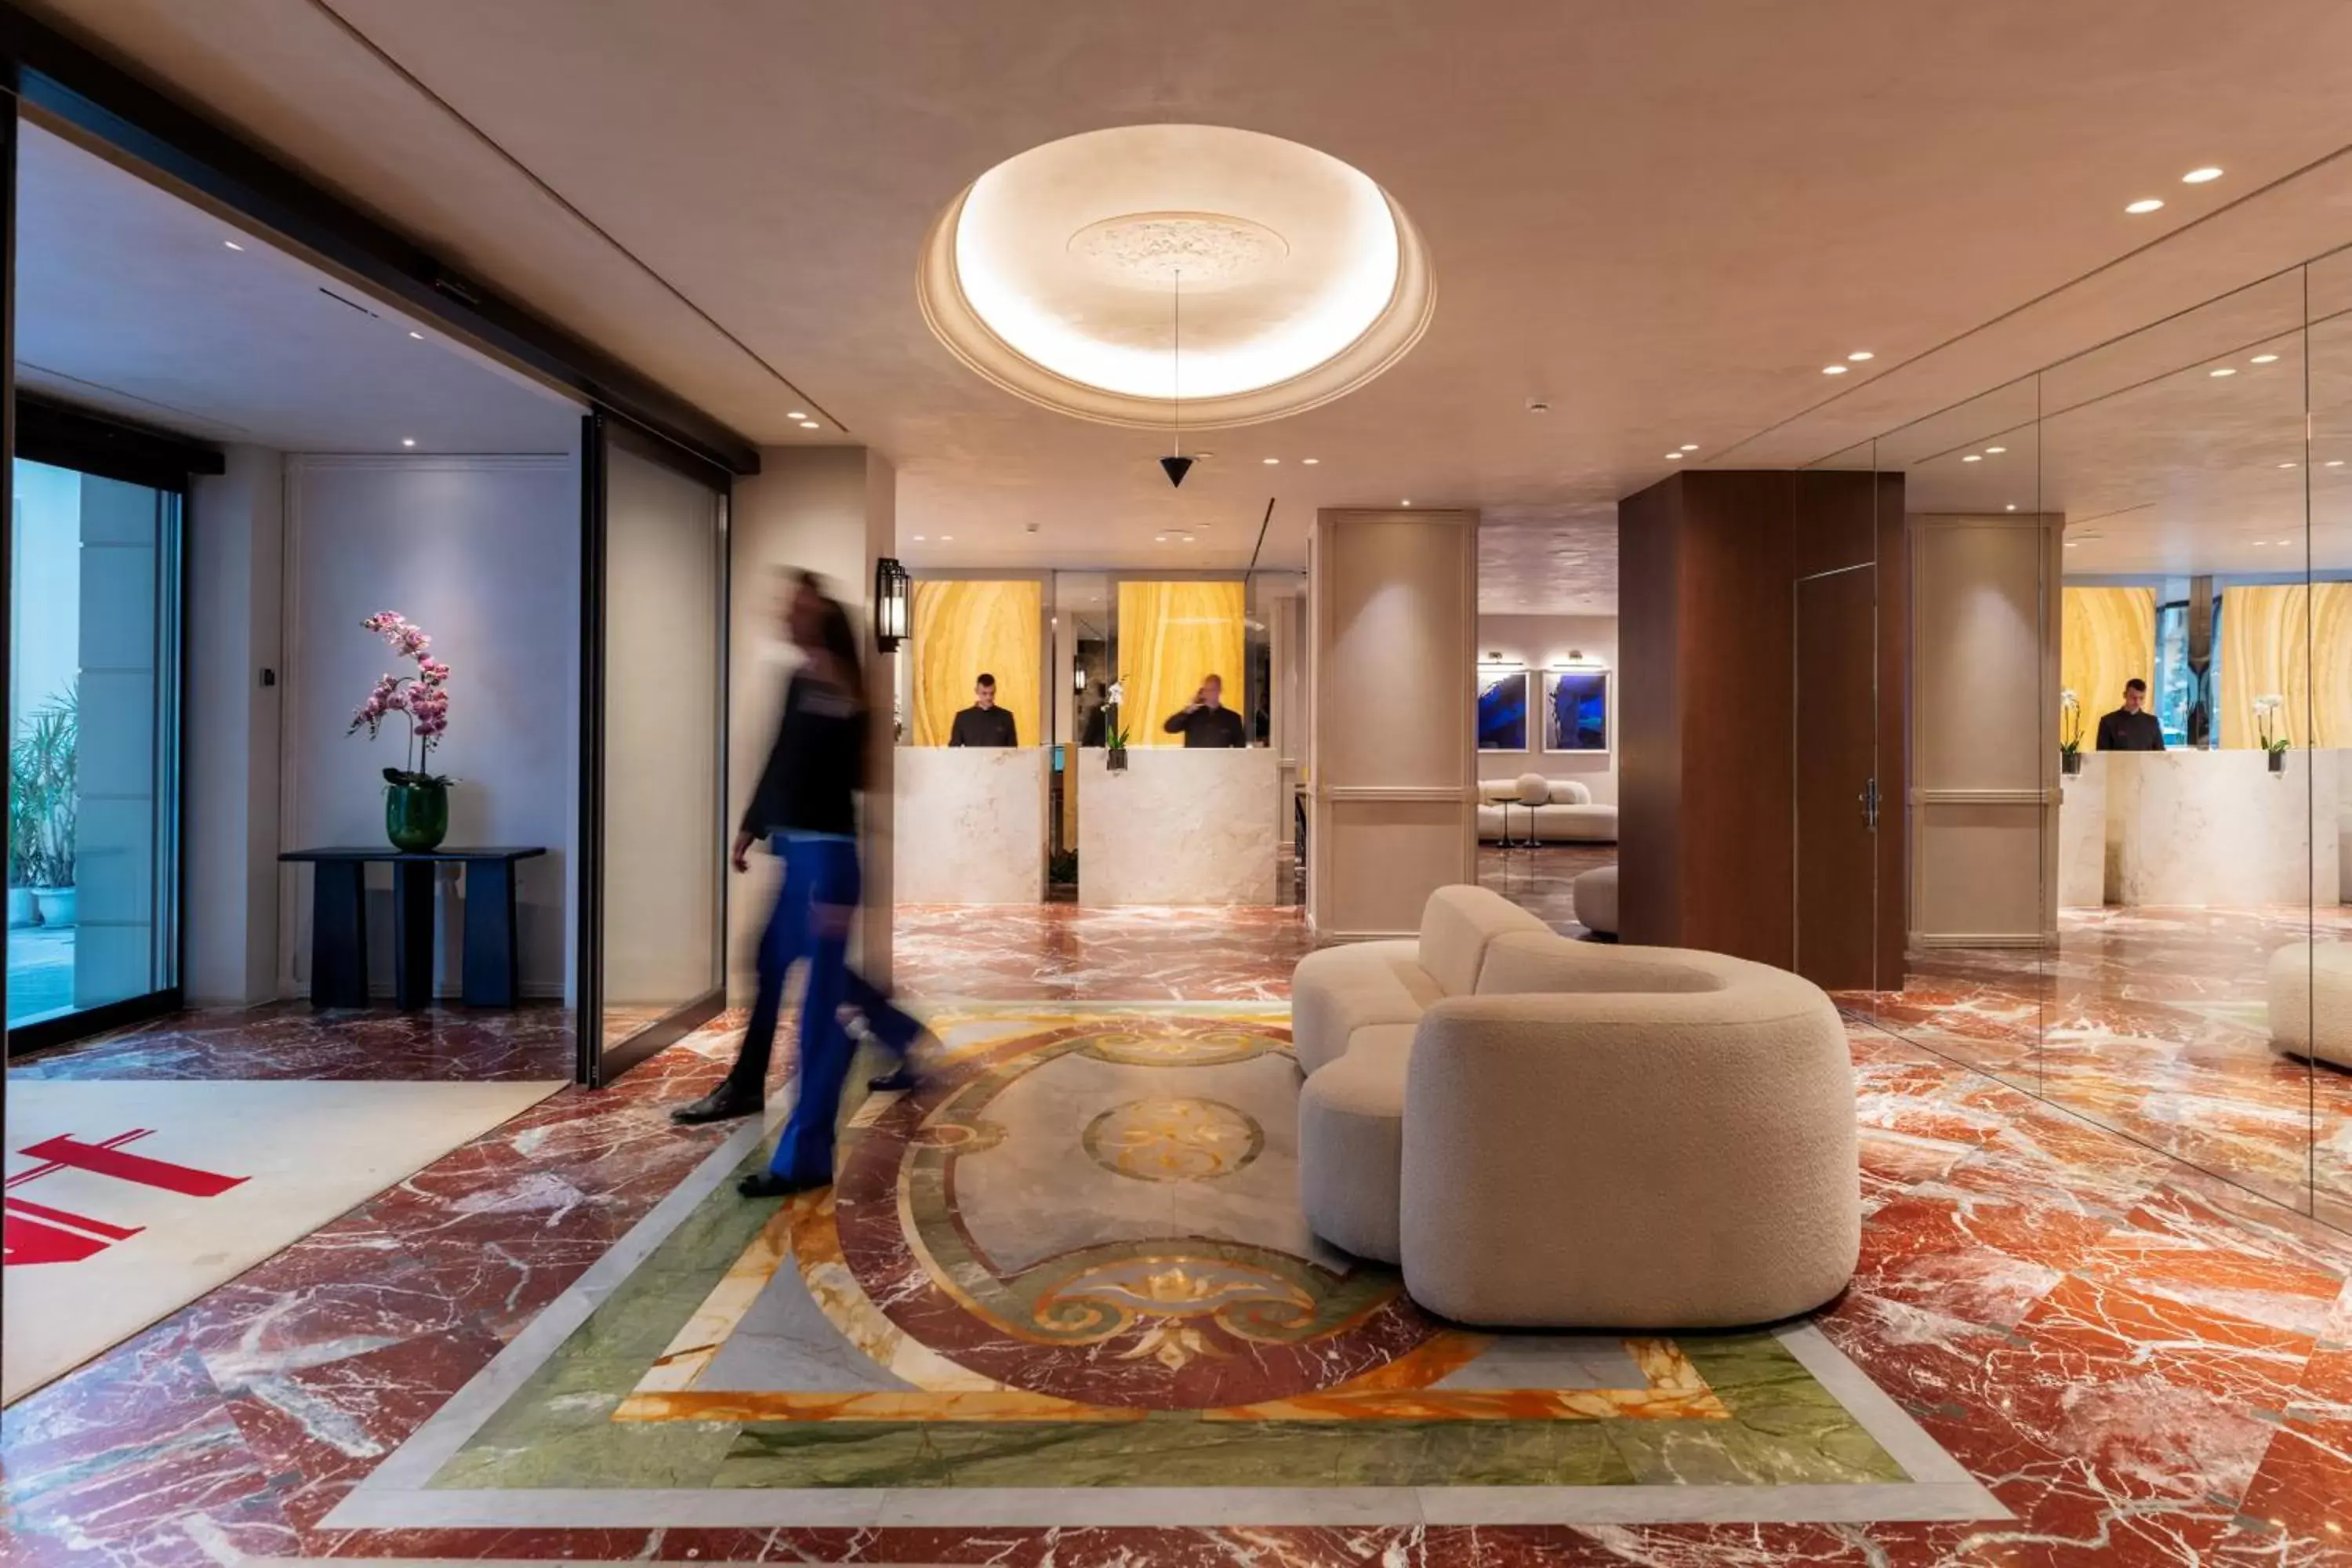 Lobby or reception, Lobby/Reception in Astor Hotel